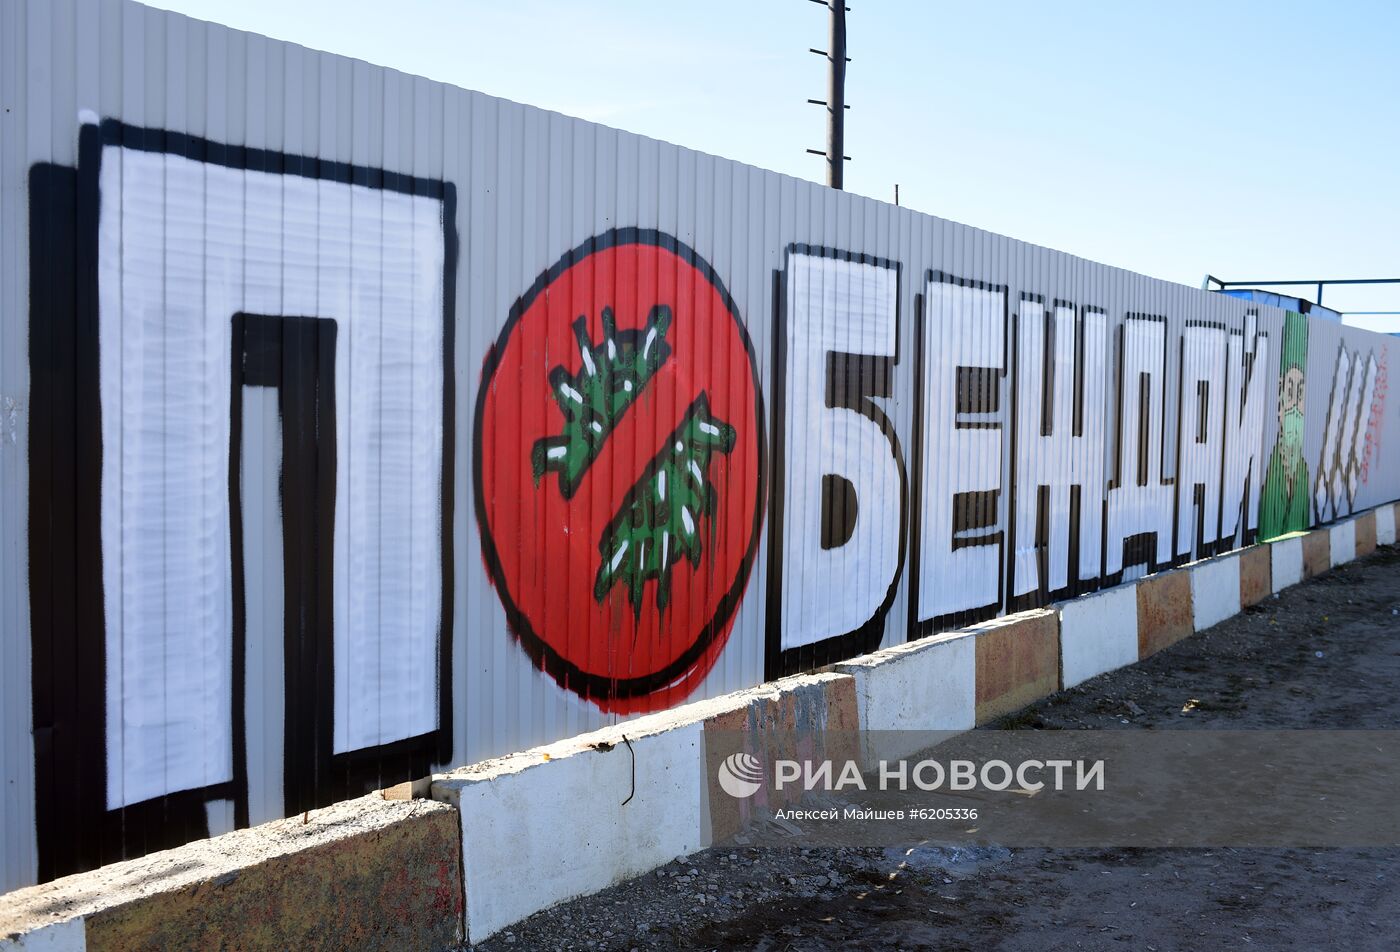 Фанаты "Спартака" нарисовали граффити в поддержку больных коронавирусом в Коммунарке